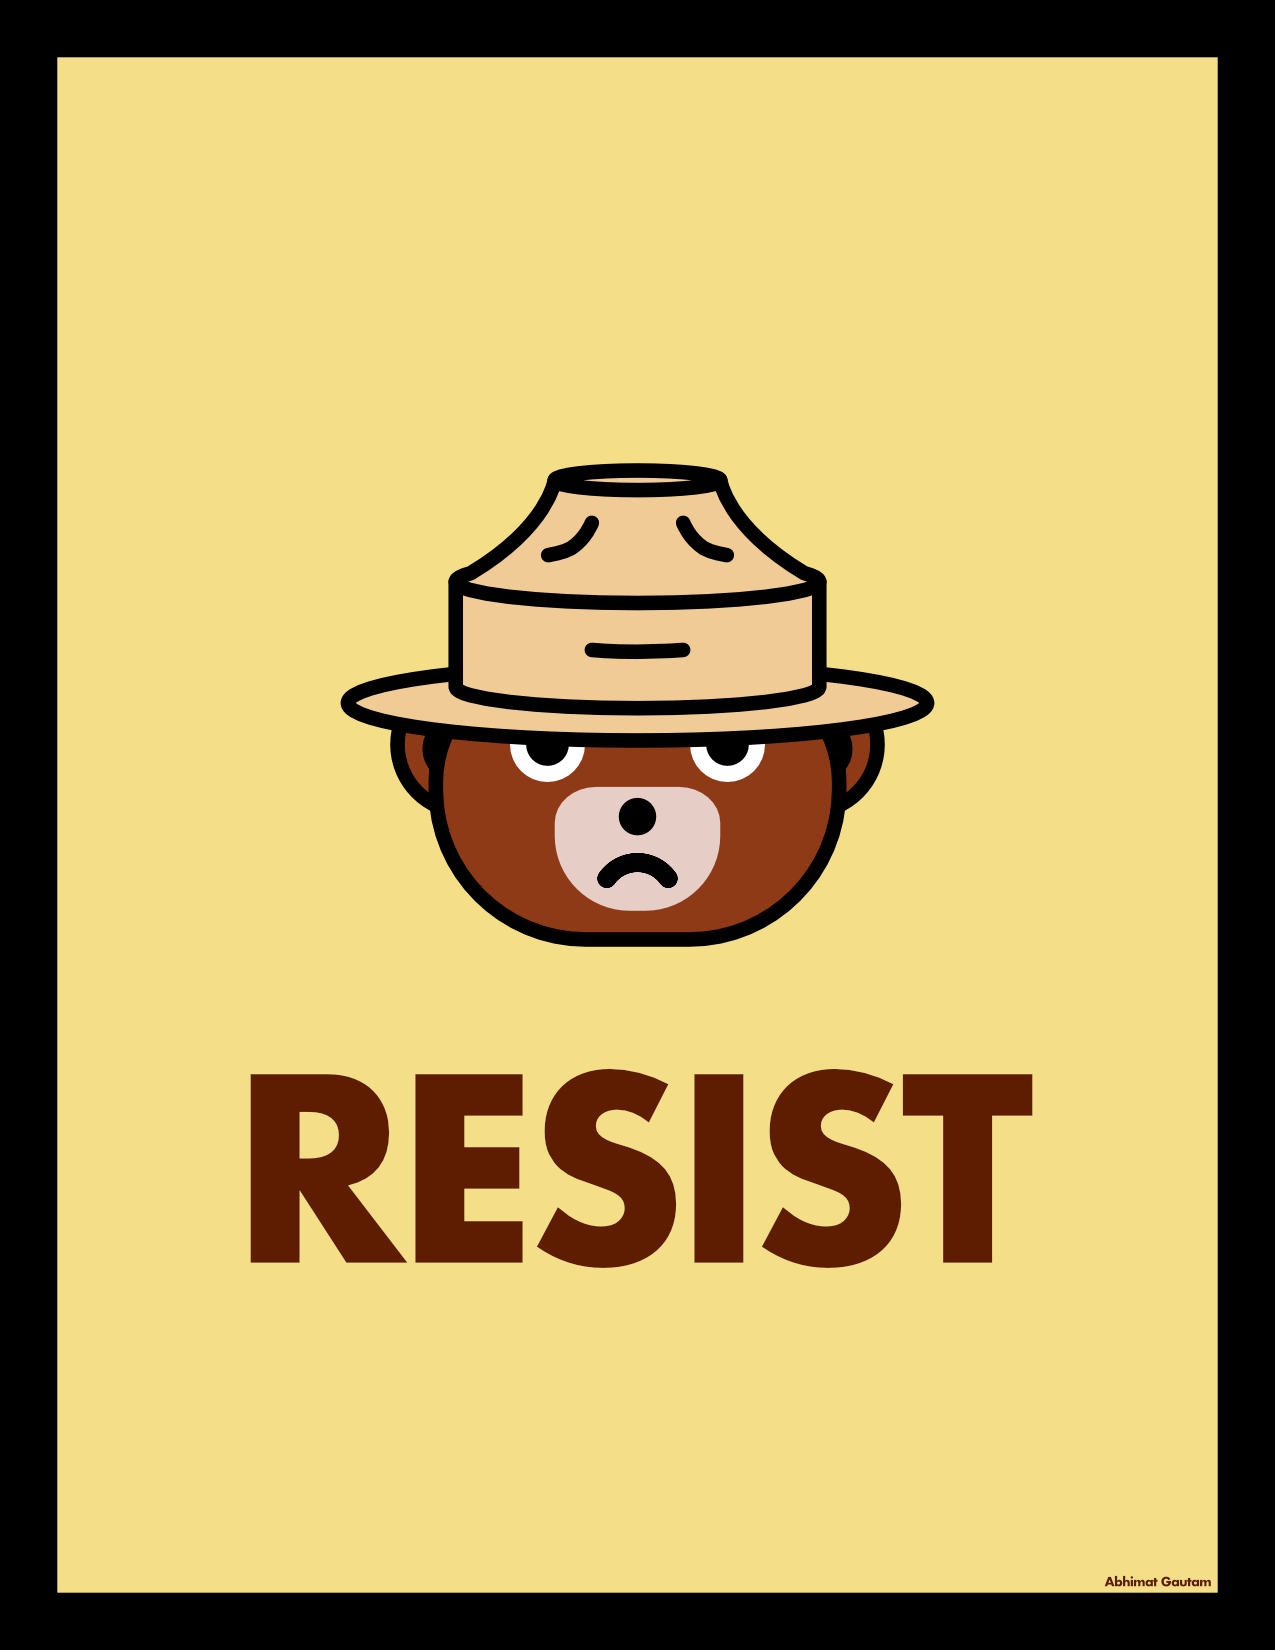 Smokey says Resist